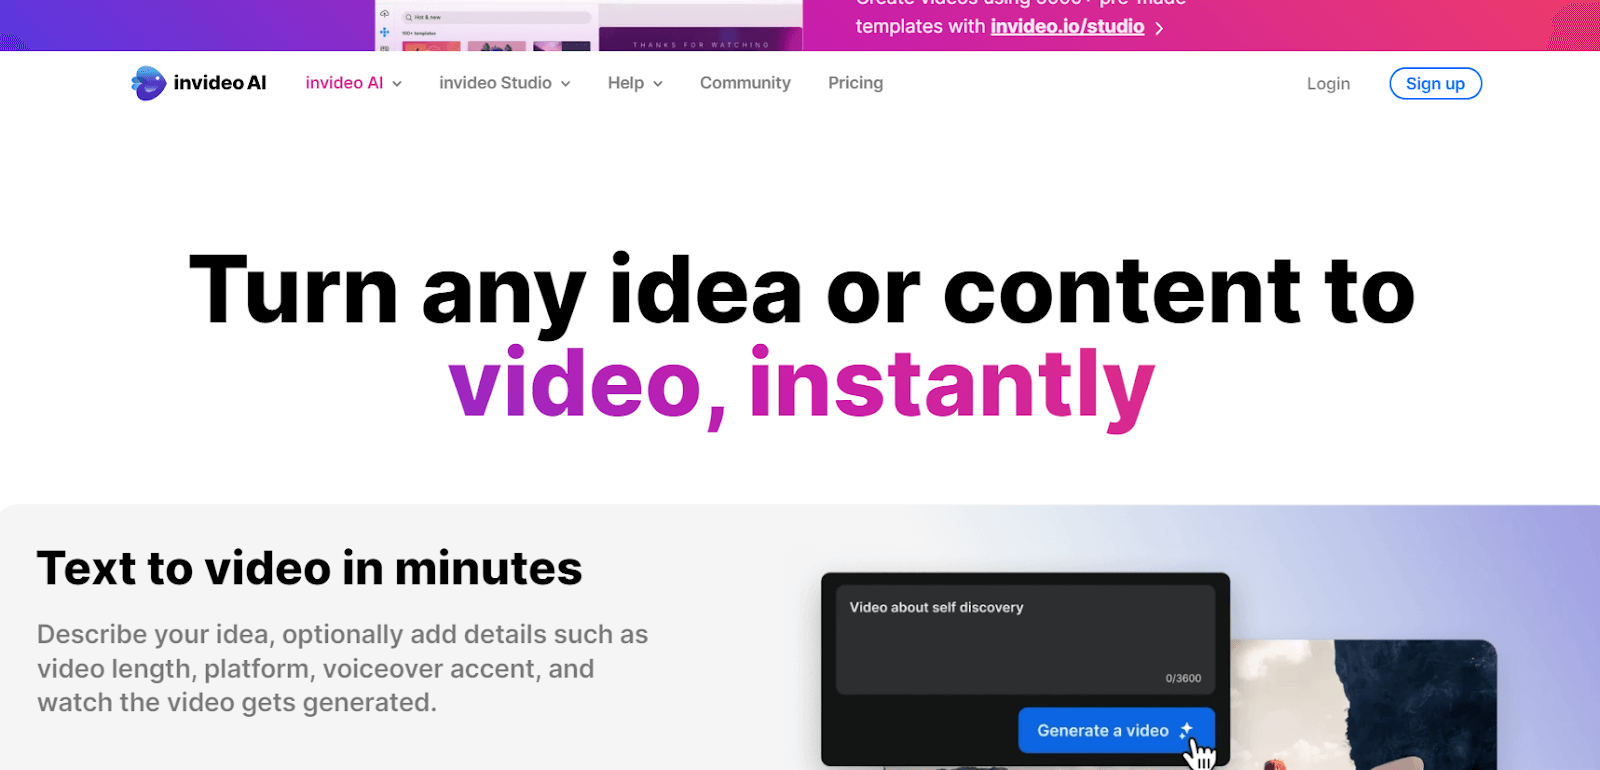  Verwandeln Sie jede Idee oder jeden Inhalt sofort in ein Video.  